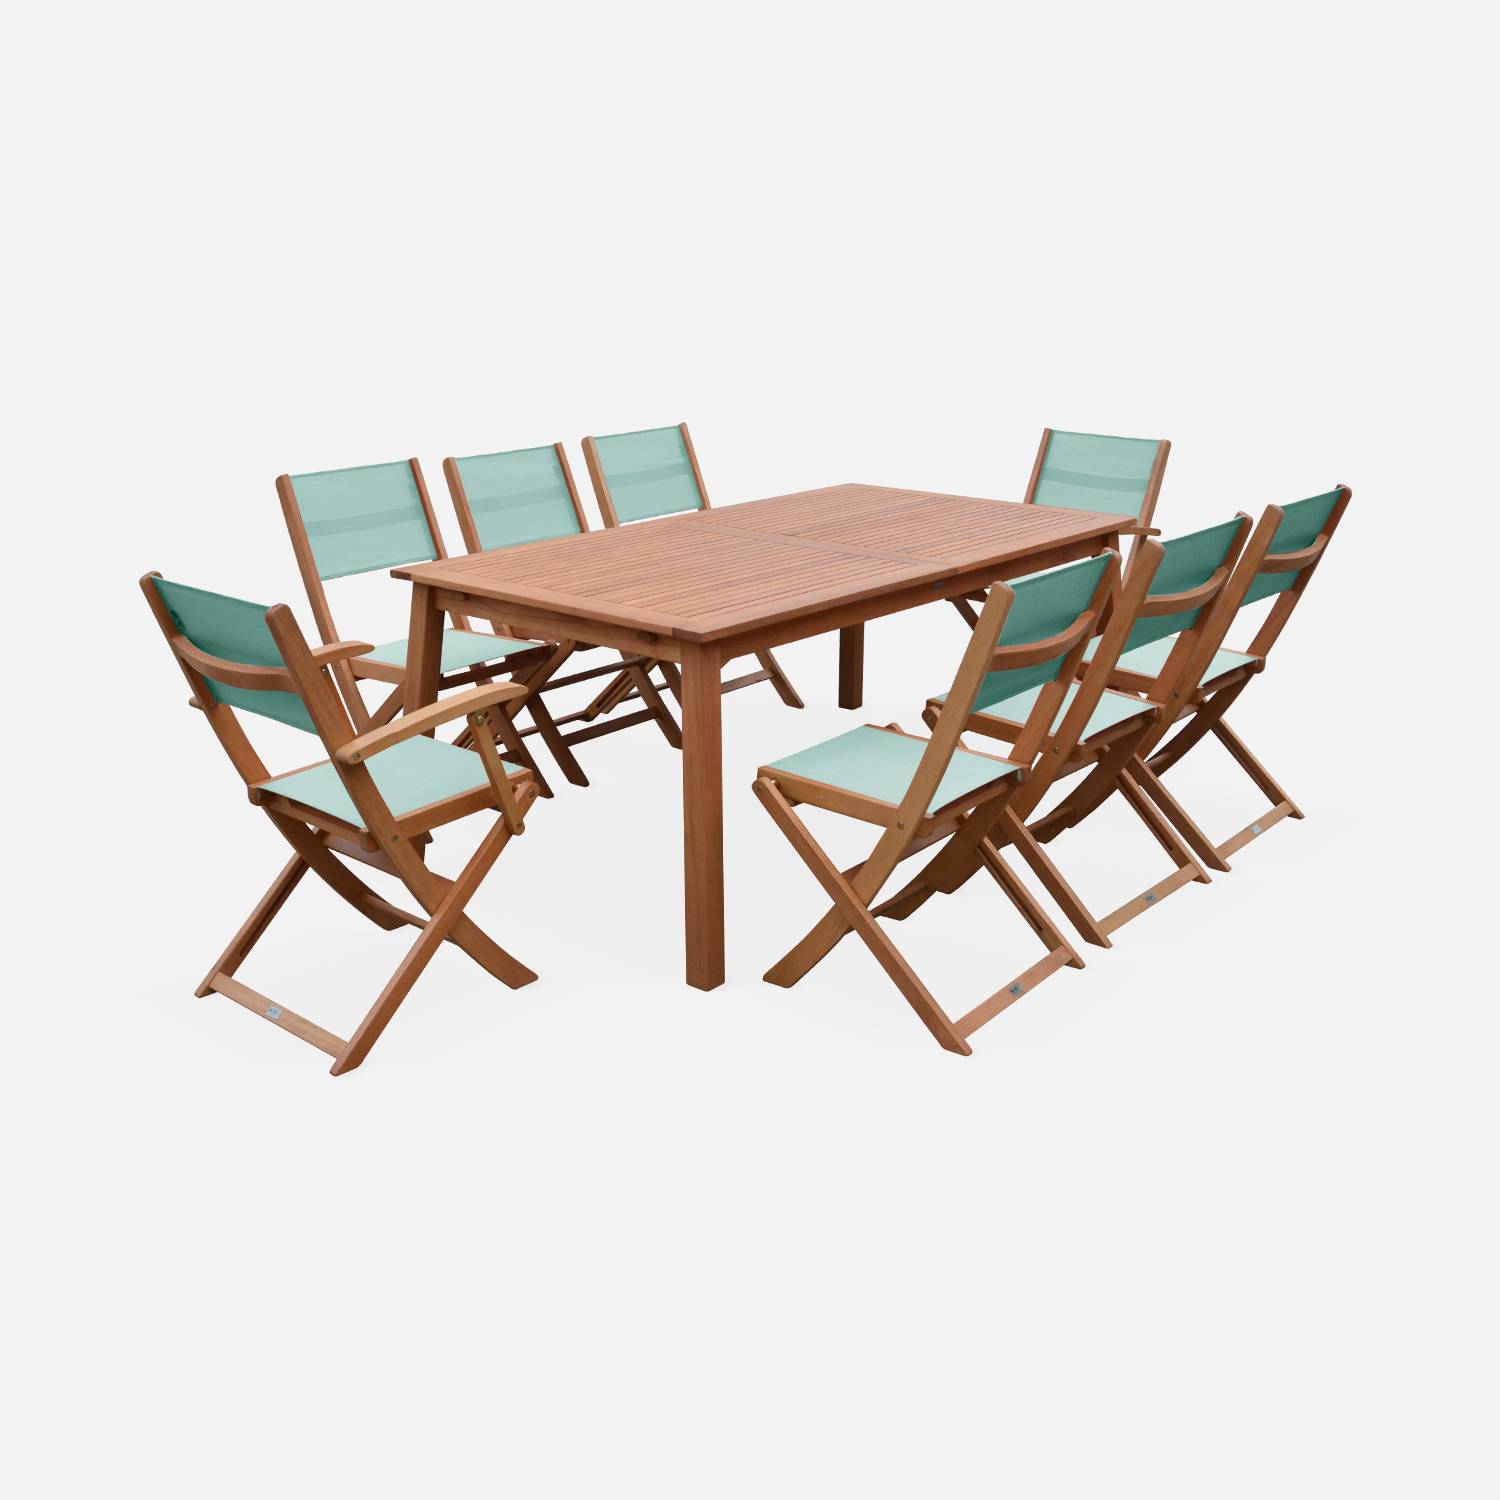 Ausziehbare Gartenmöbel aus Holz - Almeria - Tisch 180/240 cm mit Verlängerung, 2 Sesseln und 6 Stühlen aus geöltem FSC-Eukalyptusholz und grüngrauem Textilene Photo2